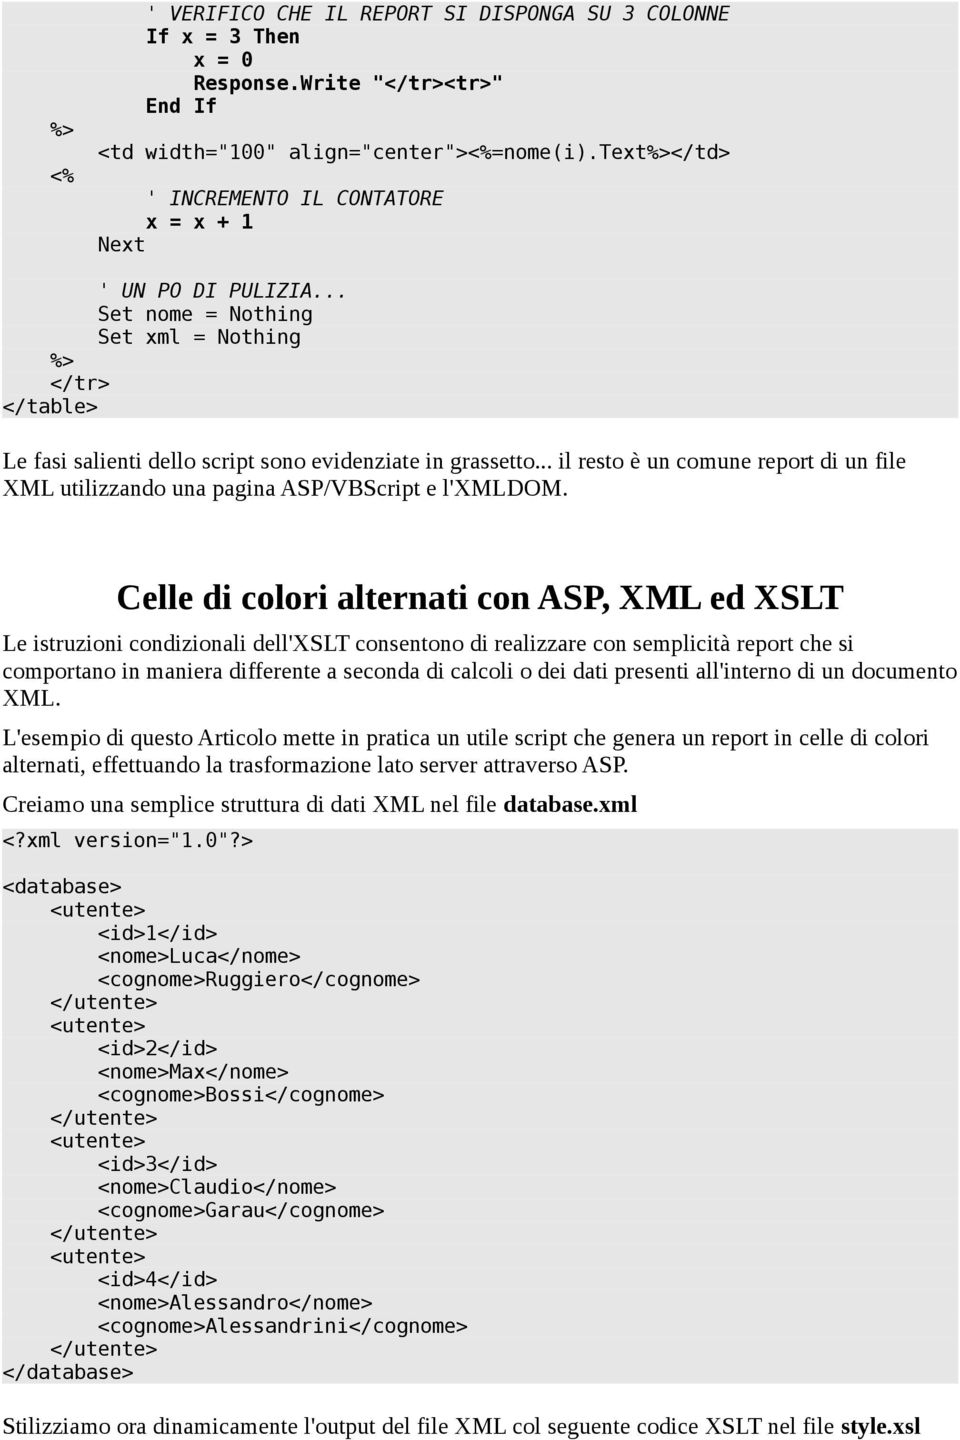 .. il resto è un comune report di un file XML utilizzando una pagina ASP/VBScript e l'xmldom.